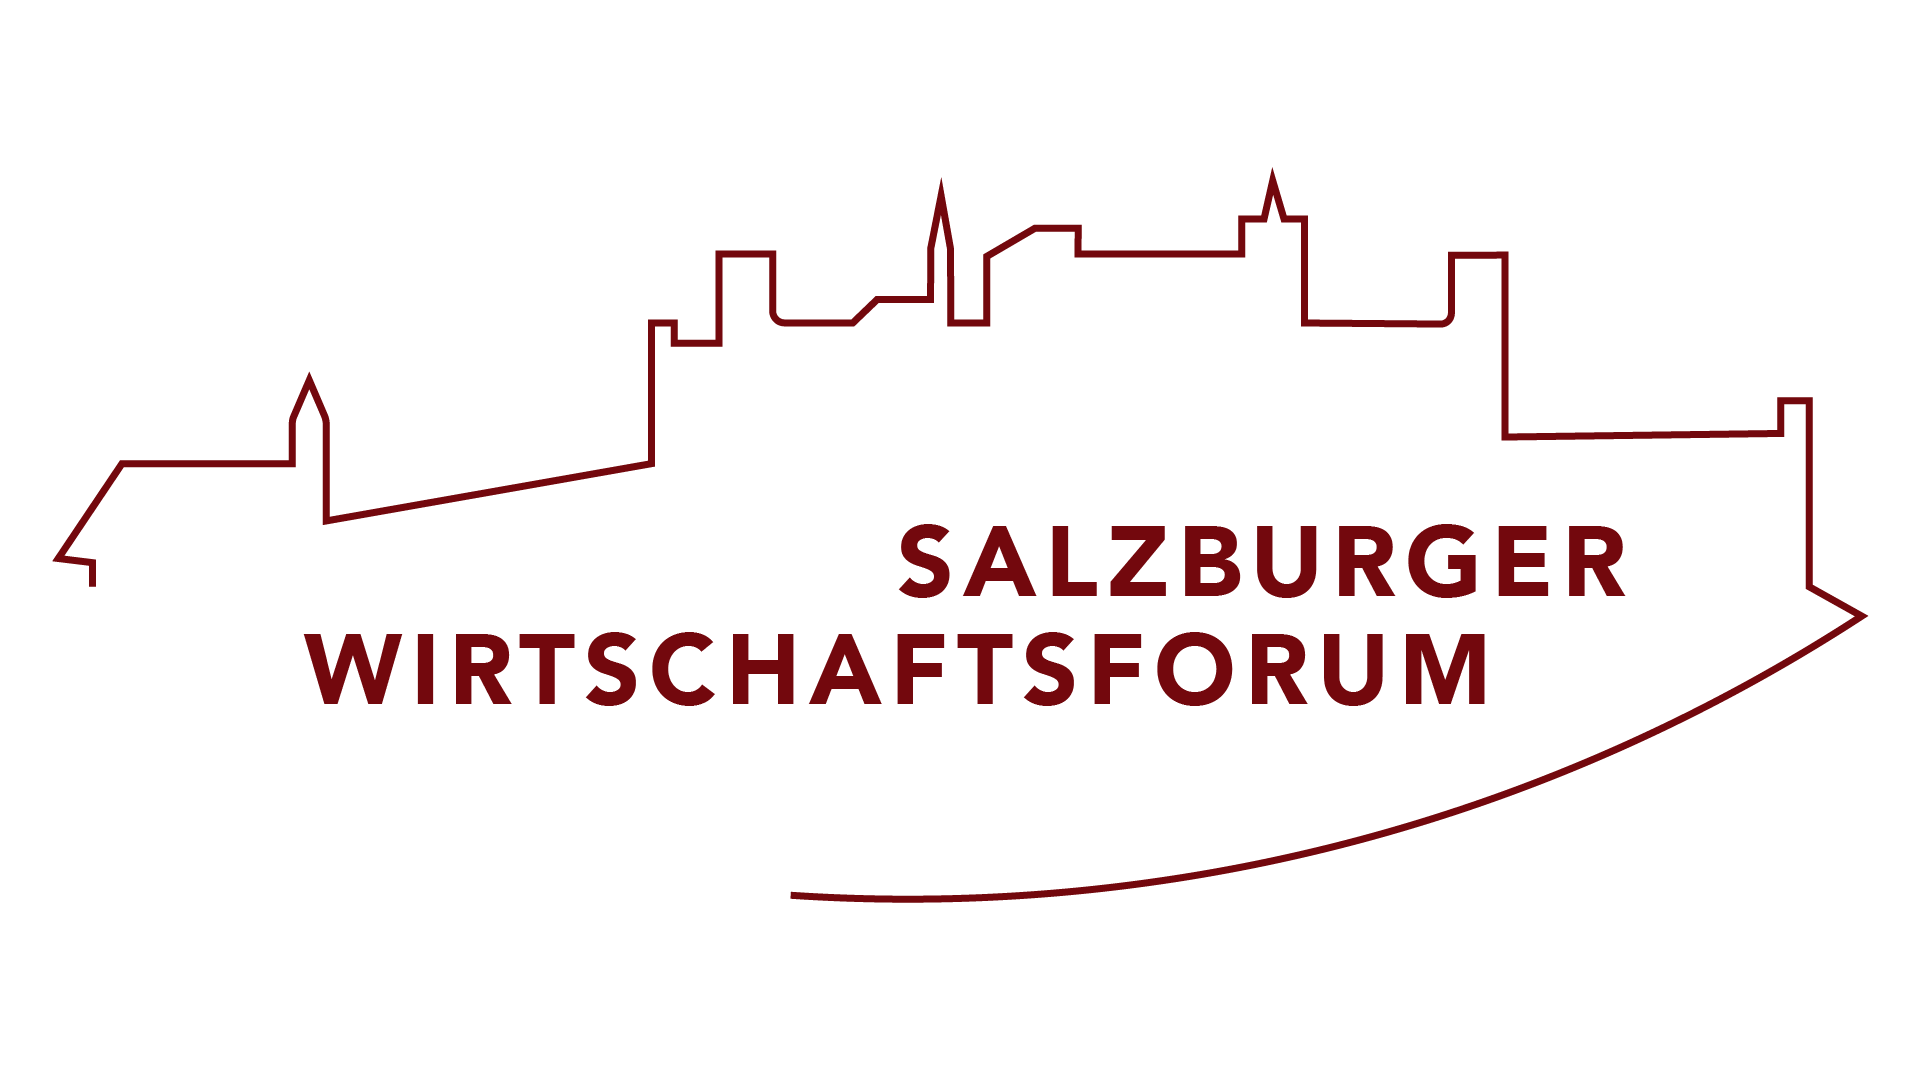 Salzburger-Wirtschaftsforum-red.png